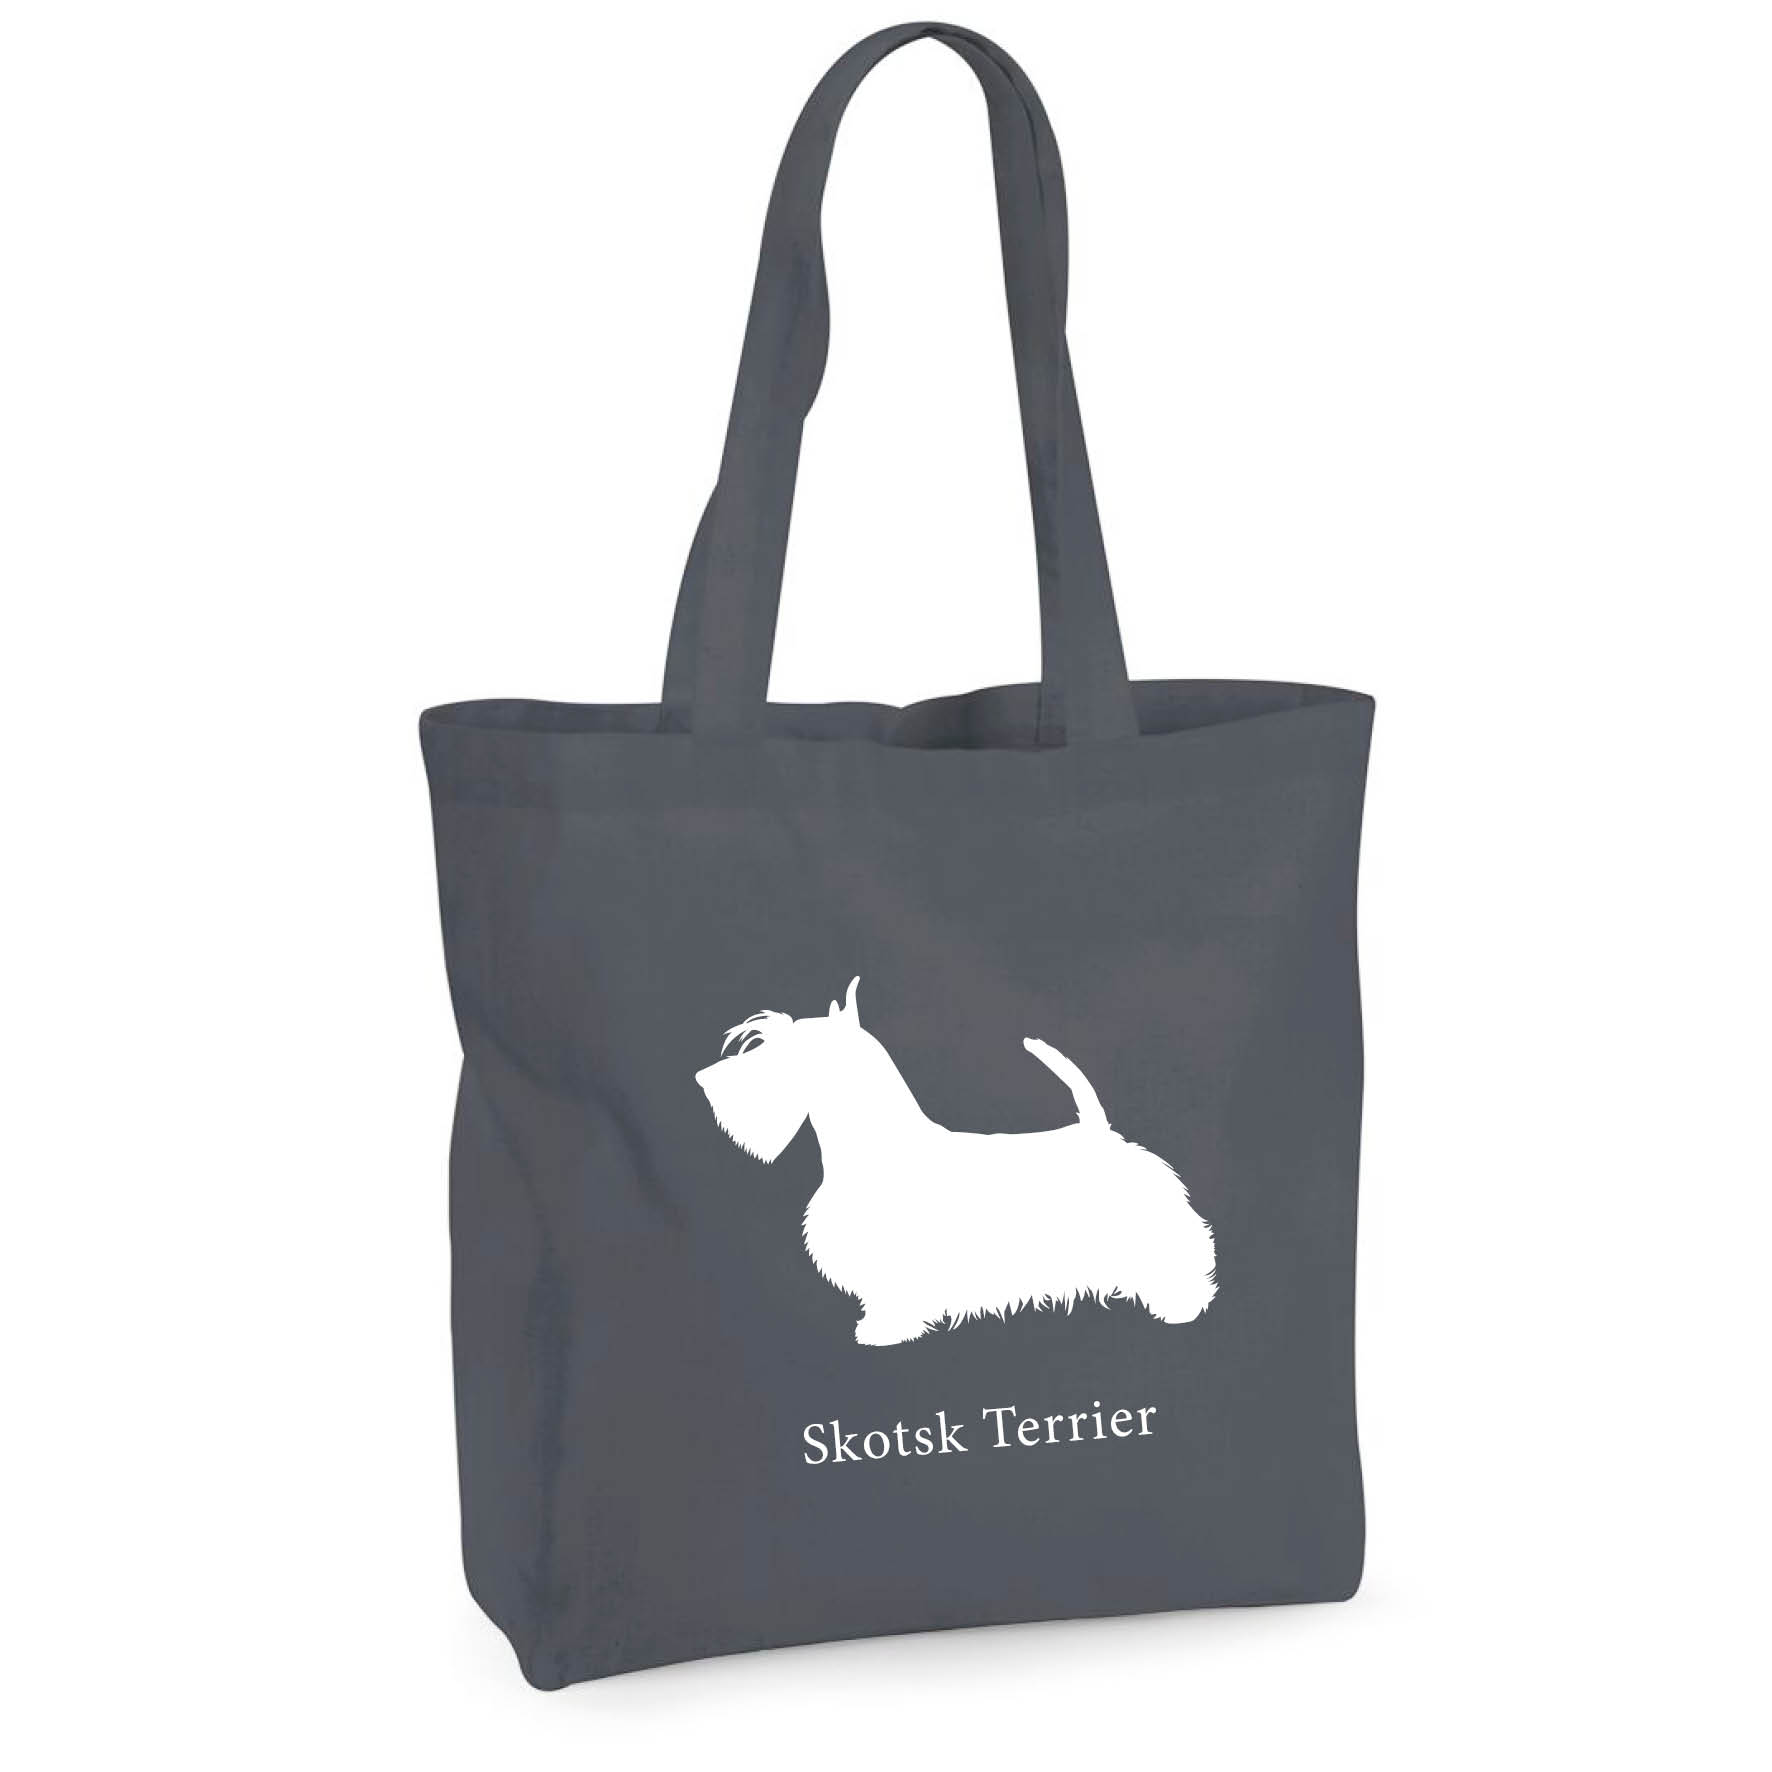 Tygkasse Skotsk Terrier - Maxi bag